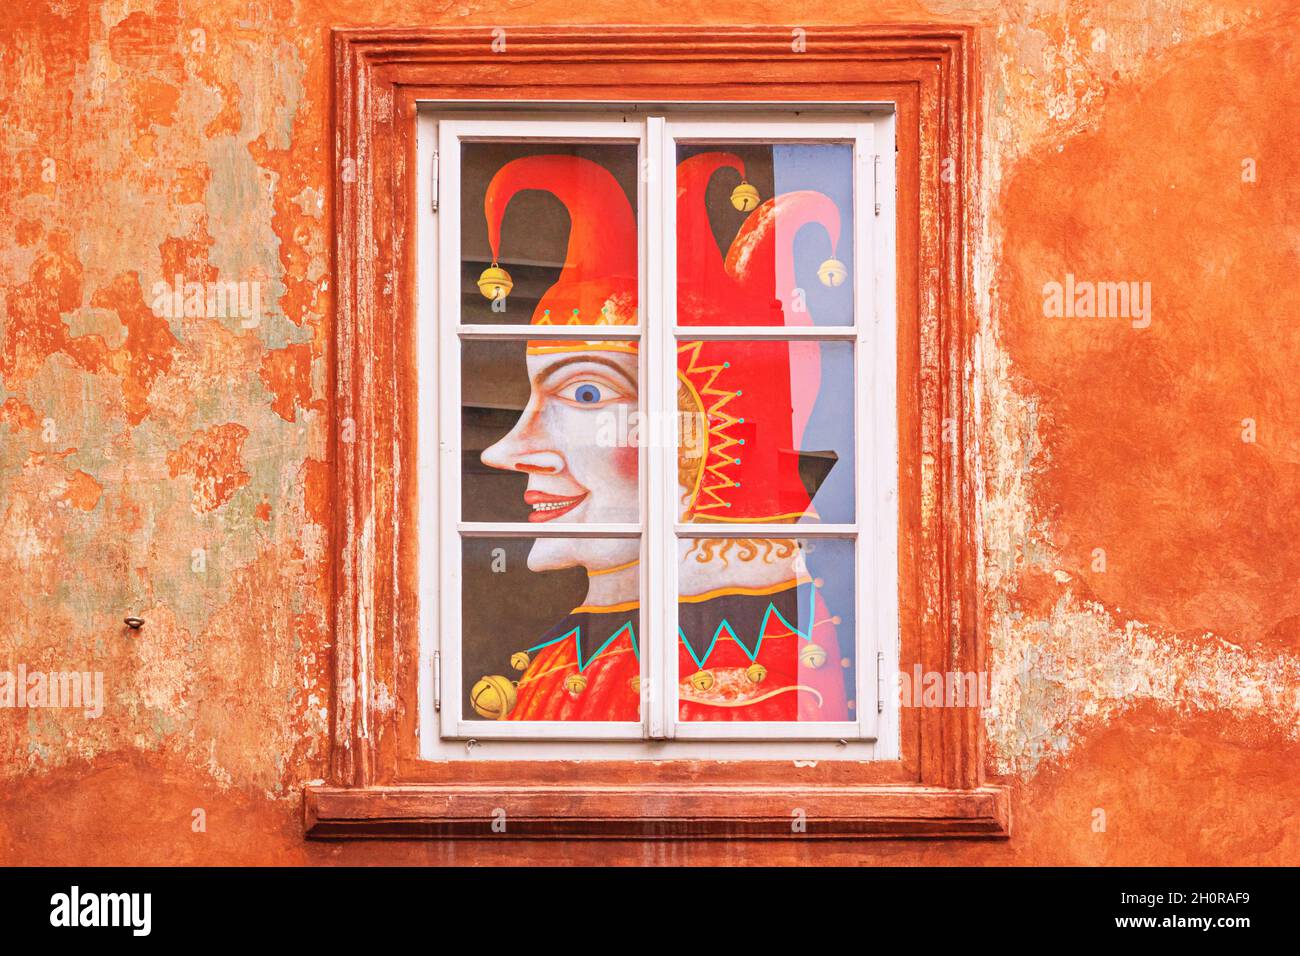 Paesaggio urbano - vista del jester a mezza faccia, poster nella finestra di un antico edificio medievale a Cesky Krumlov, Repubblica Ceca Foto Stock